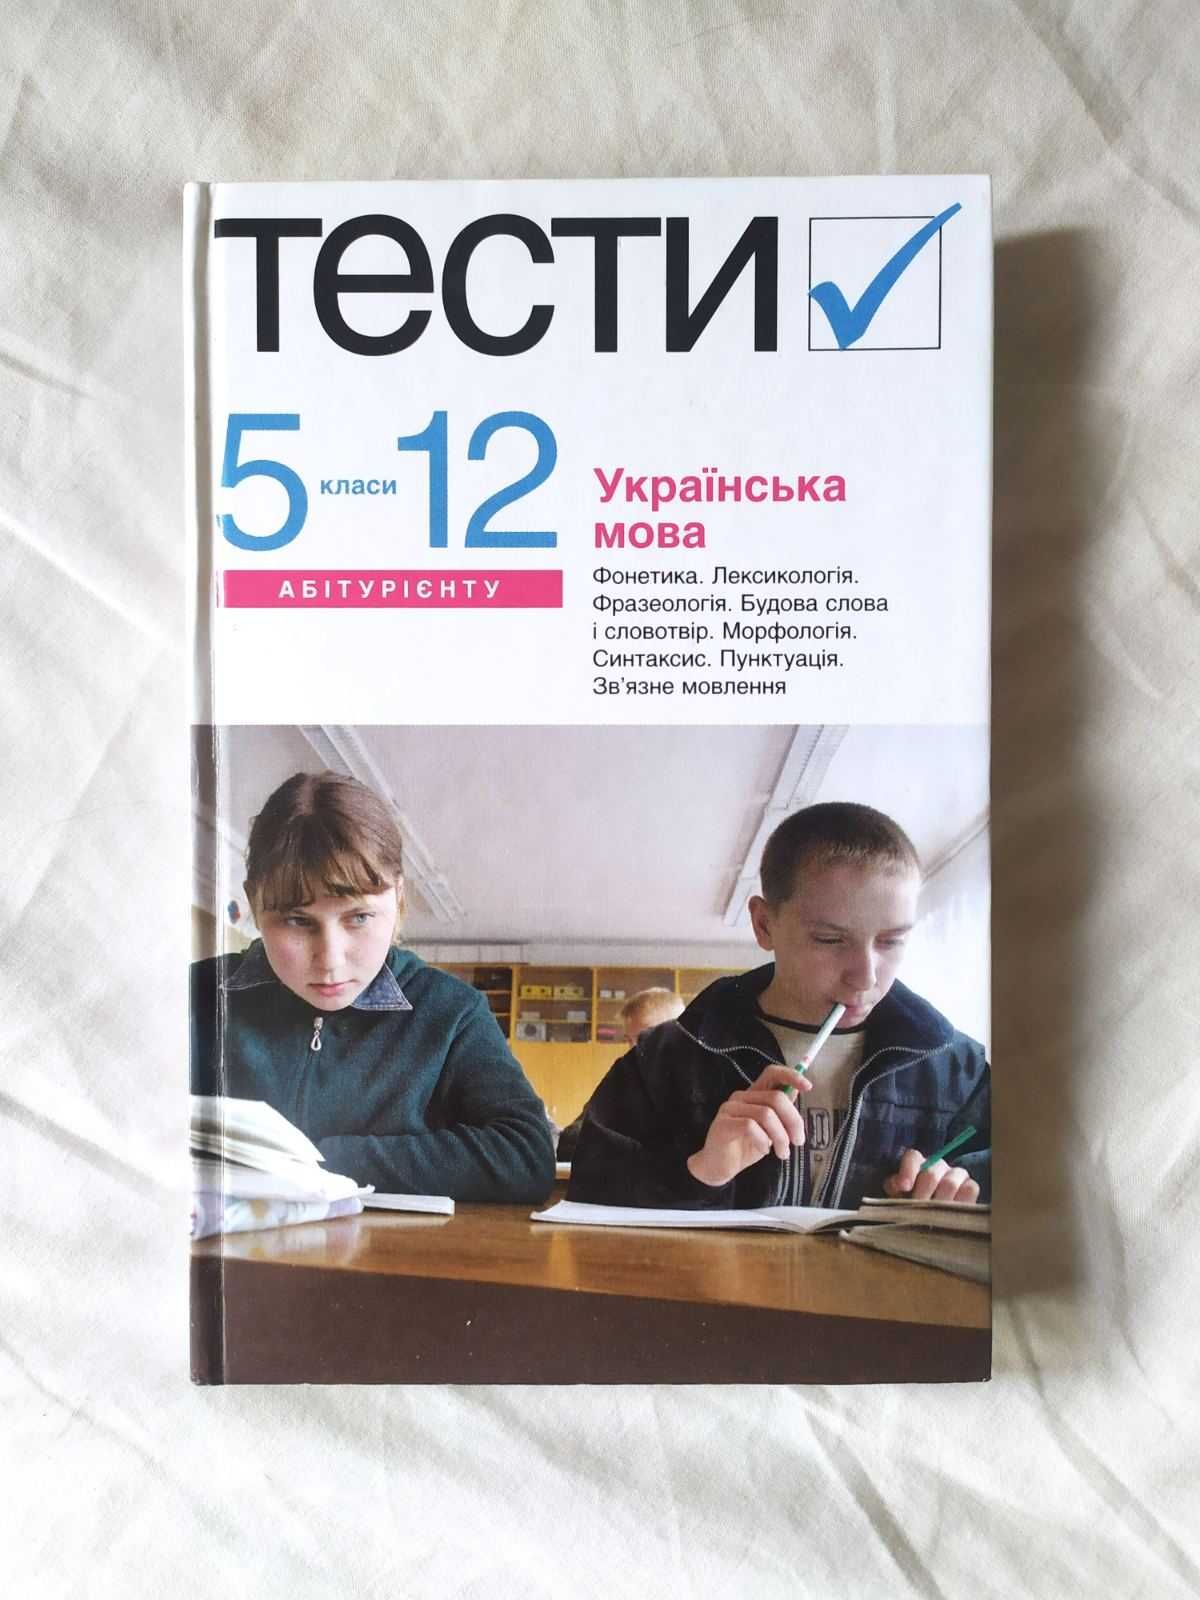 Тести з української мови 5-12 клас